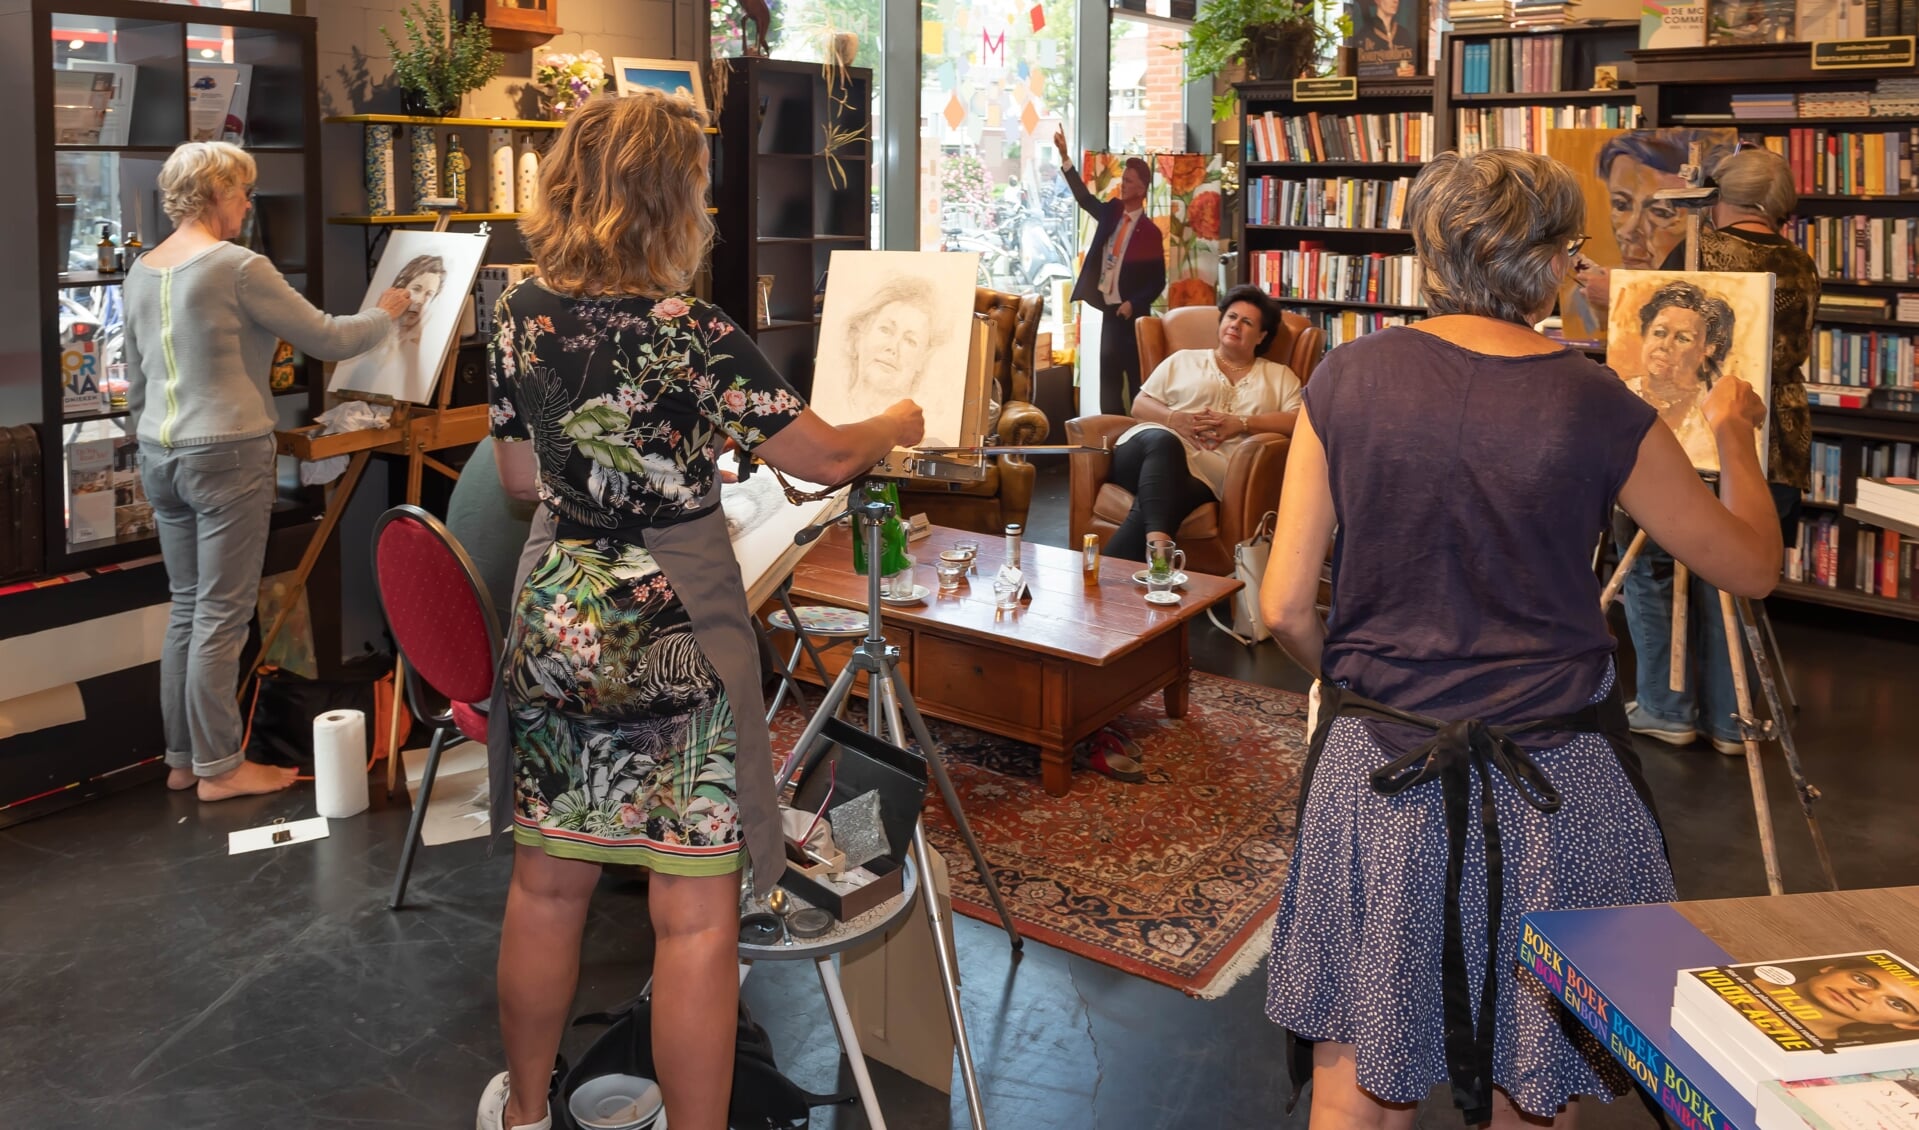 Burgemeester Wendy Verkley poseerde voor de kunstenaars van MEERkunst in het Cultuurcafé. | Foto: Richard van Egmond / tekst: Ina Verblaauw